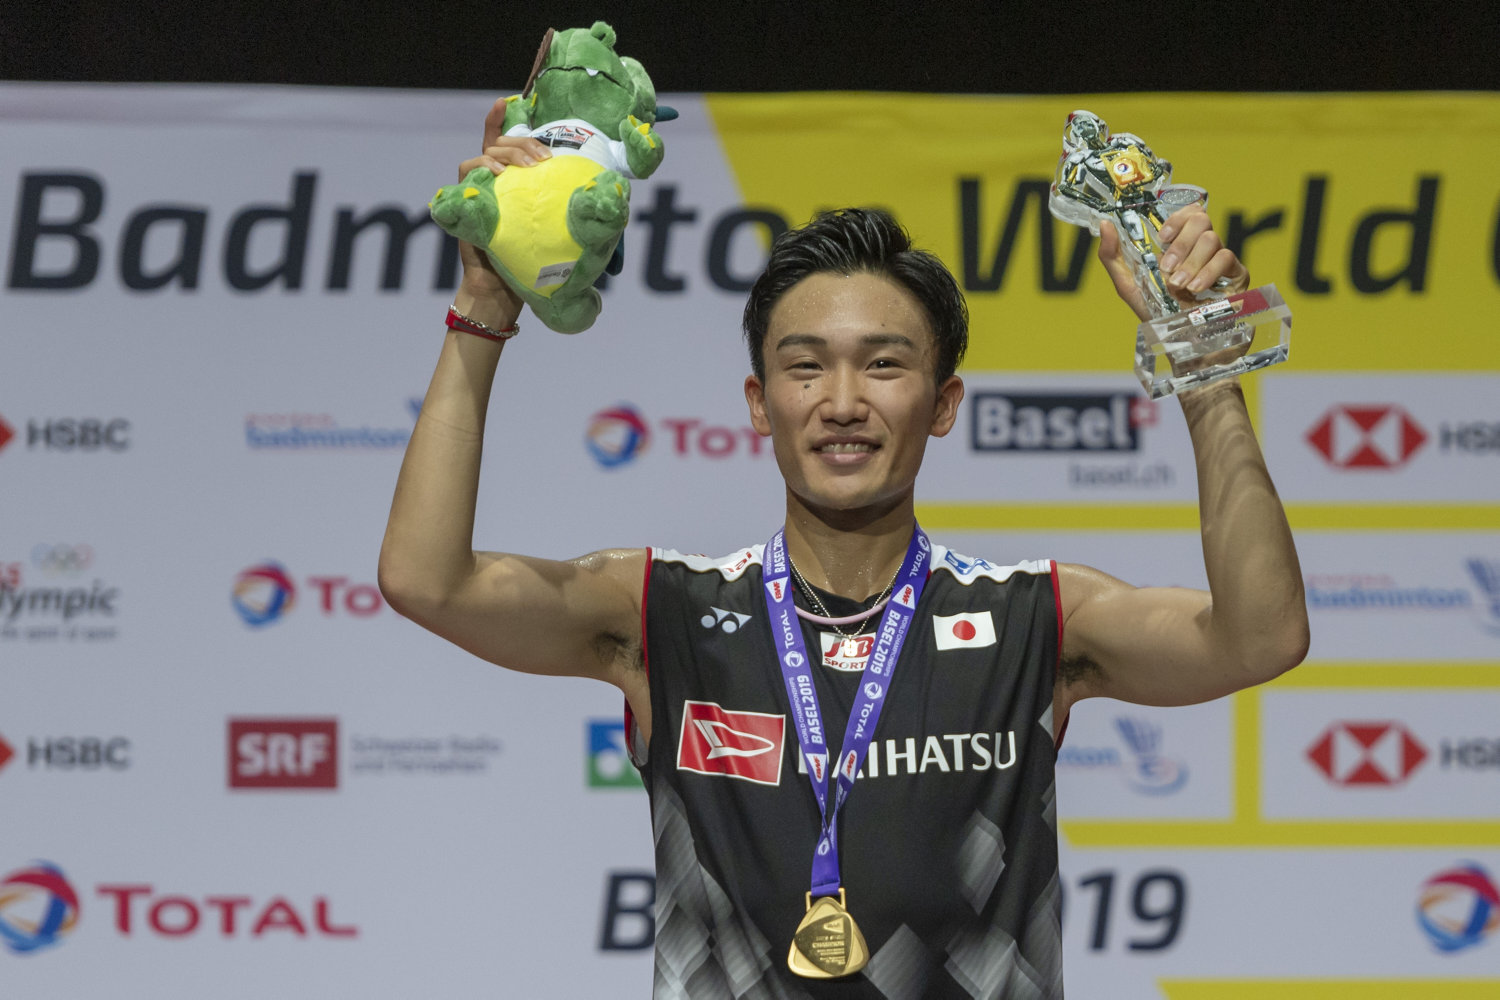 badmintonstjerne indstiller karrieren efter misset ol